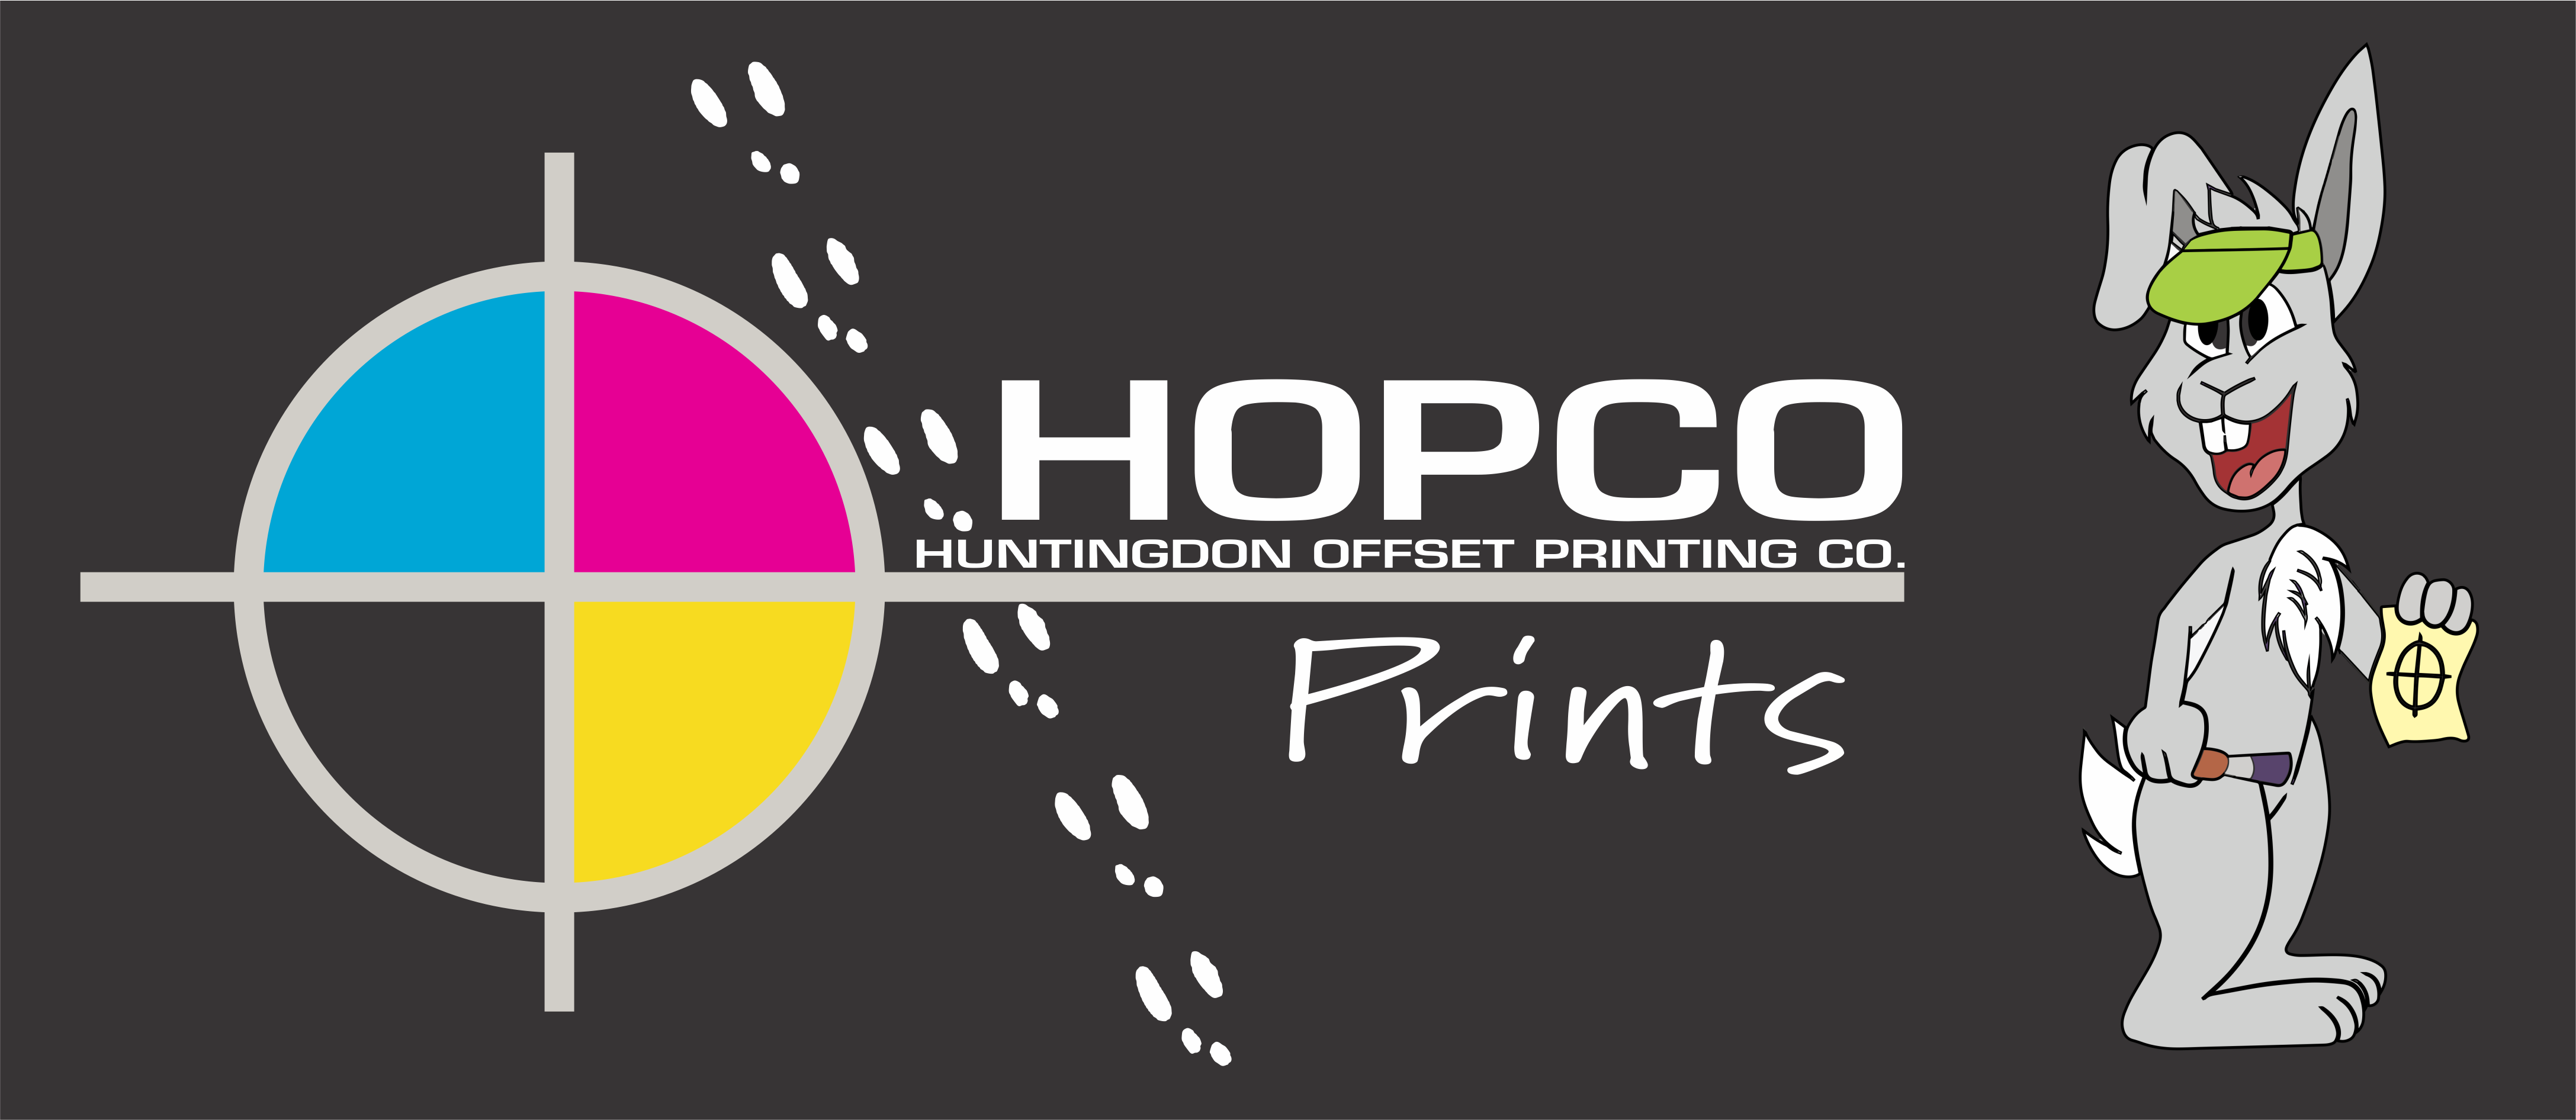 hopcoprints